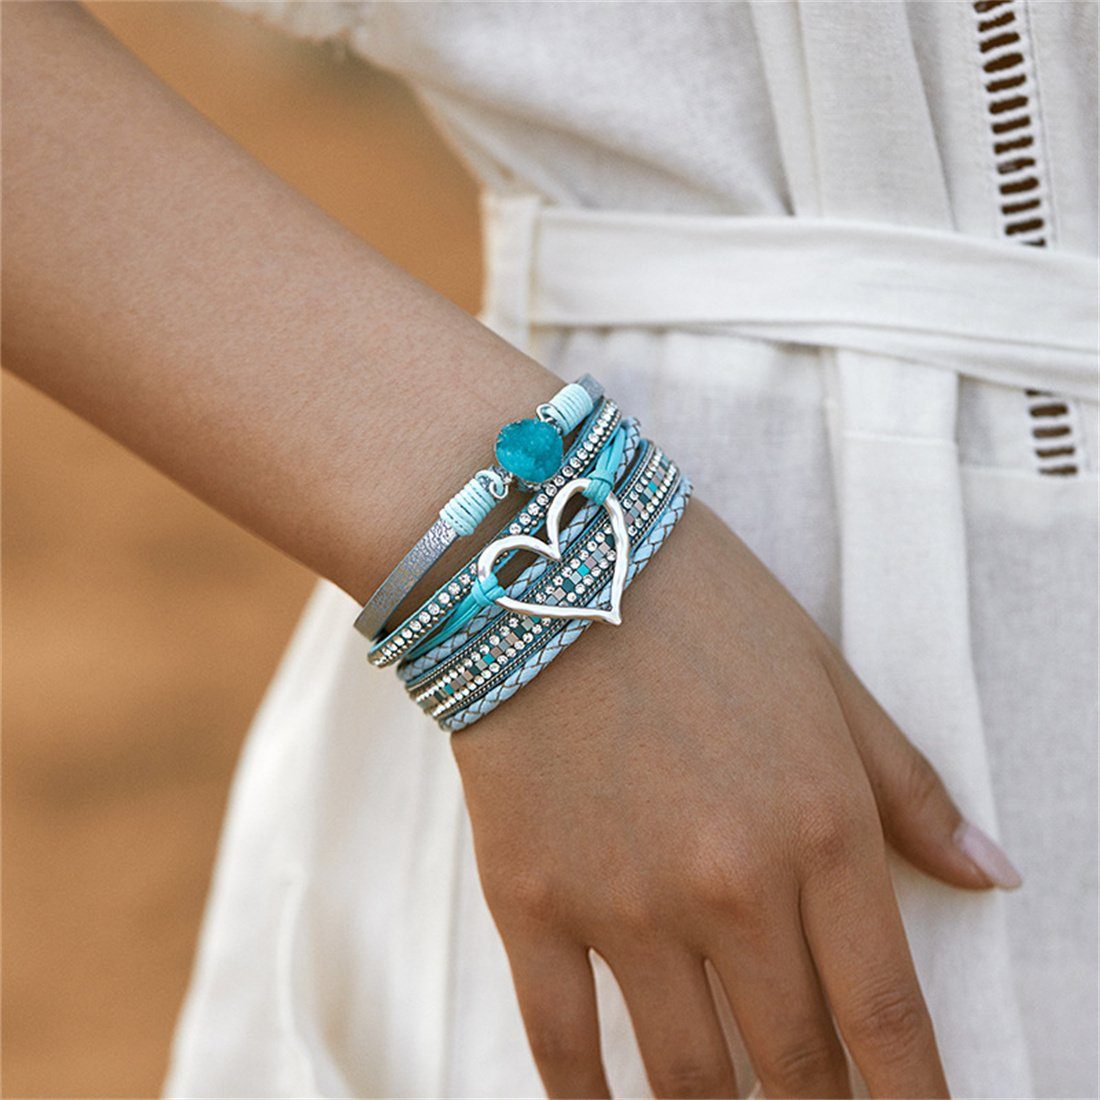 DÖRÖY Lederarmband Bohème mehrlagiges Armband mit Liebe Magnetverschluss Armband Schmuck blau